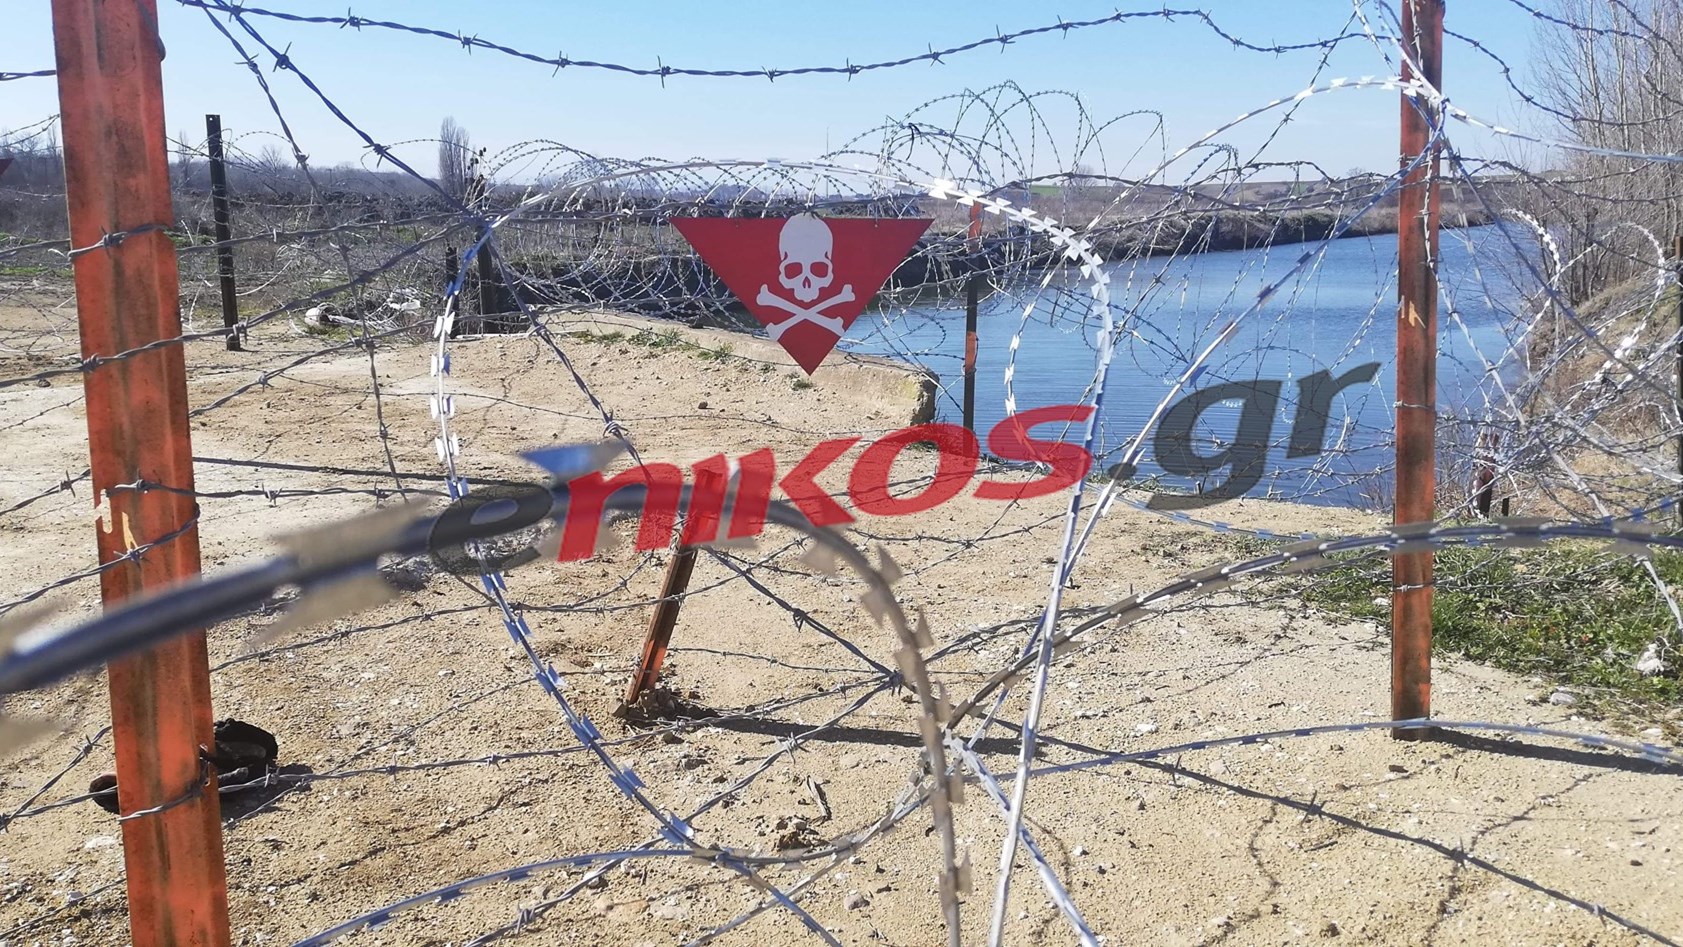 Έβρος: Ένας χρόνος μετά την υβριδική απειλή της Τουρκίας – Οι άγνωστες πτυχές – BINTEO